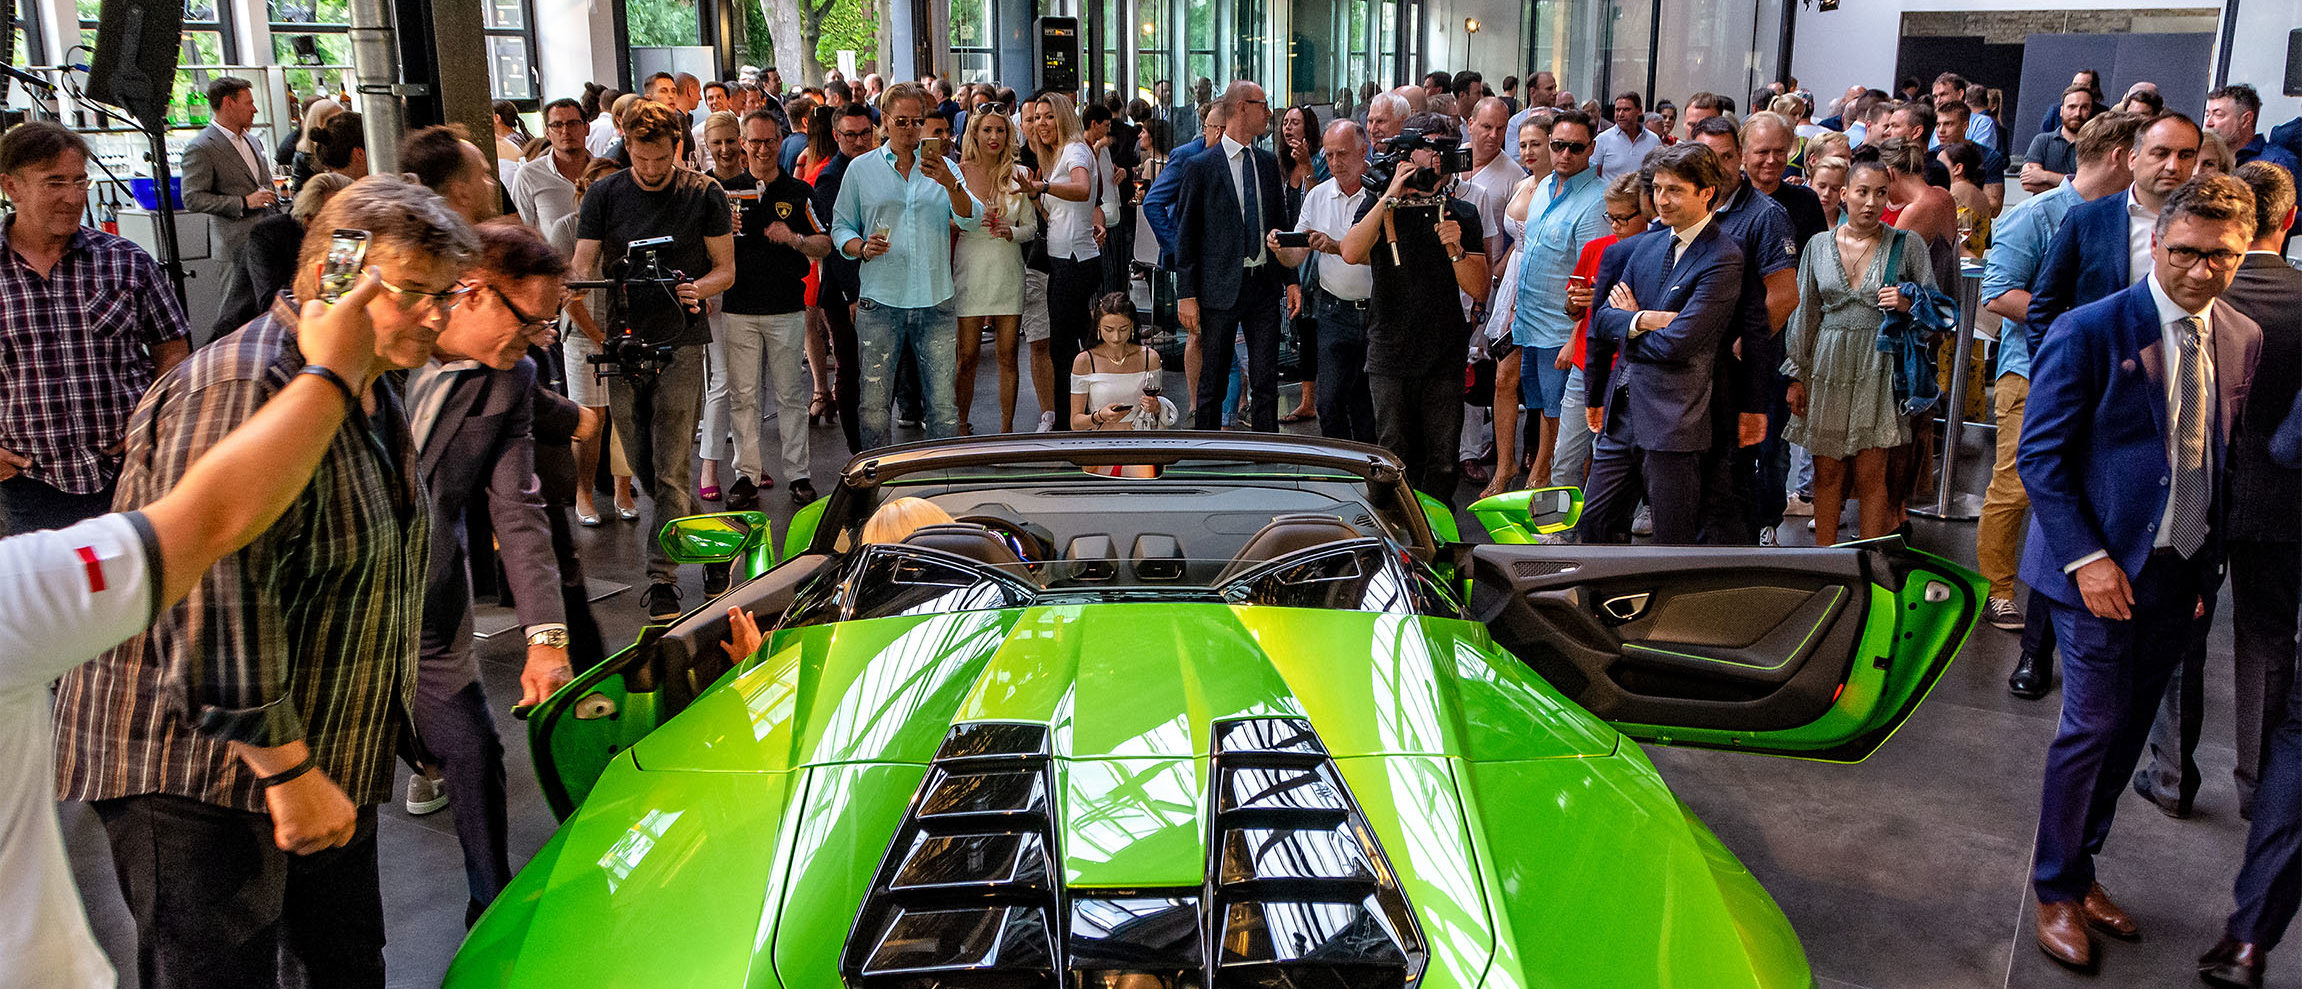 Eine große Feier markiert die Rückkehr von Lamborghini nach Berlin